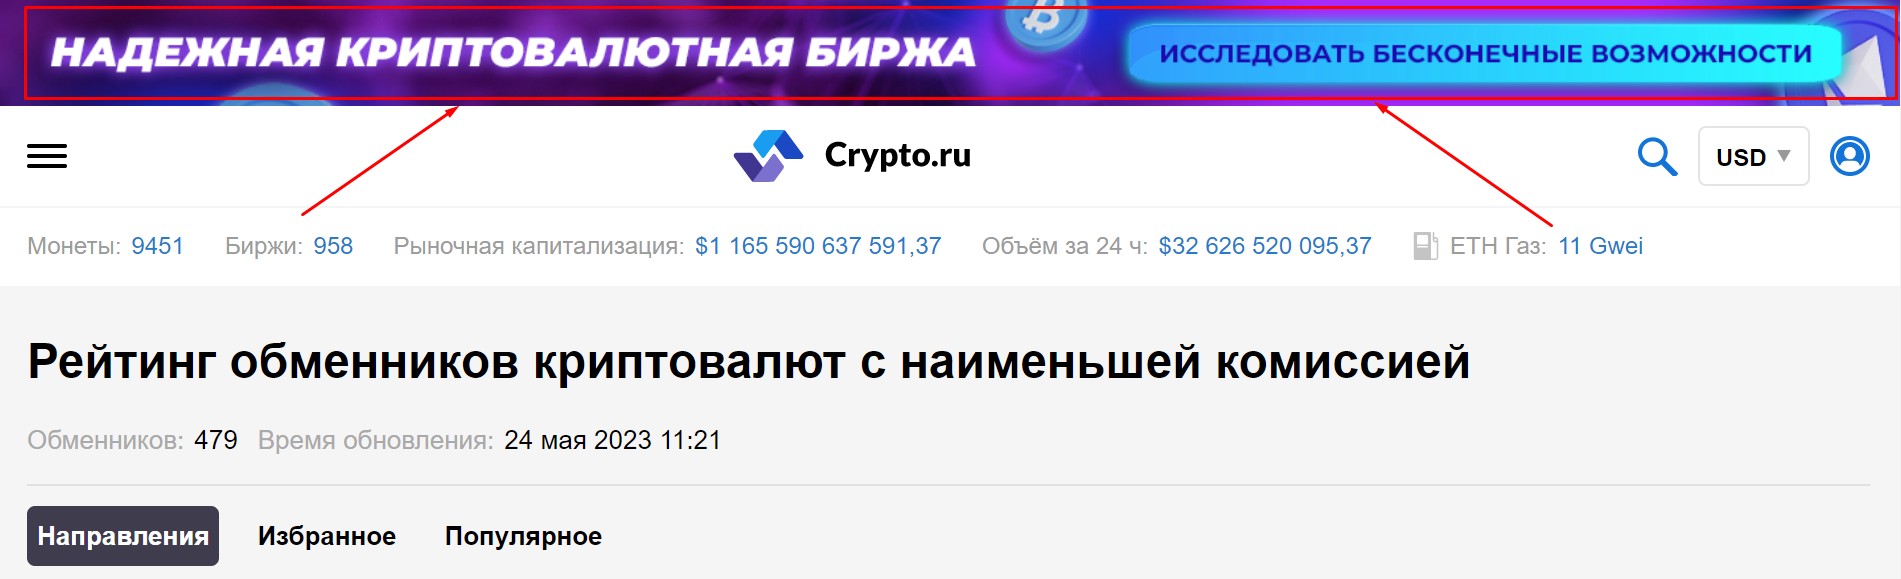 crypto ru телеграм